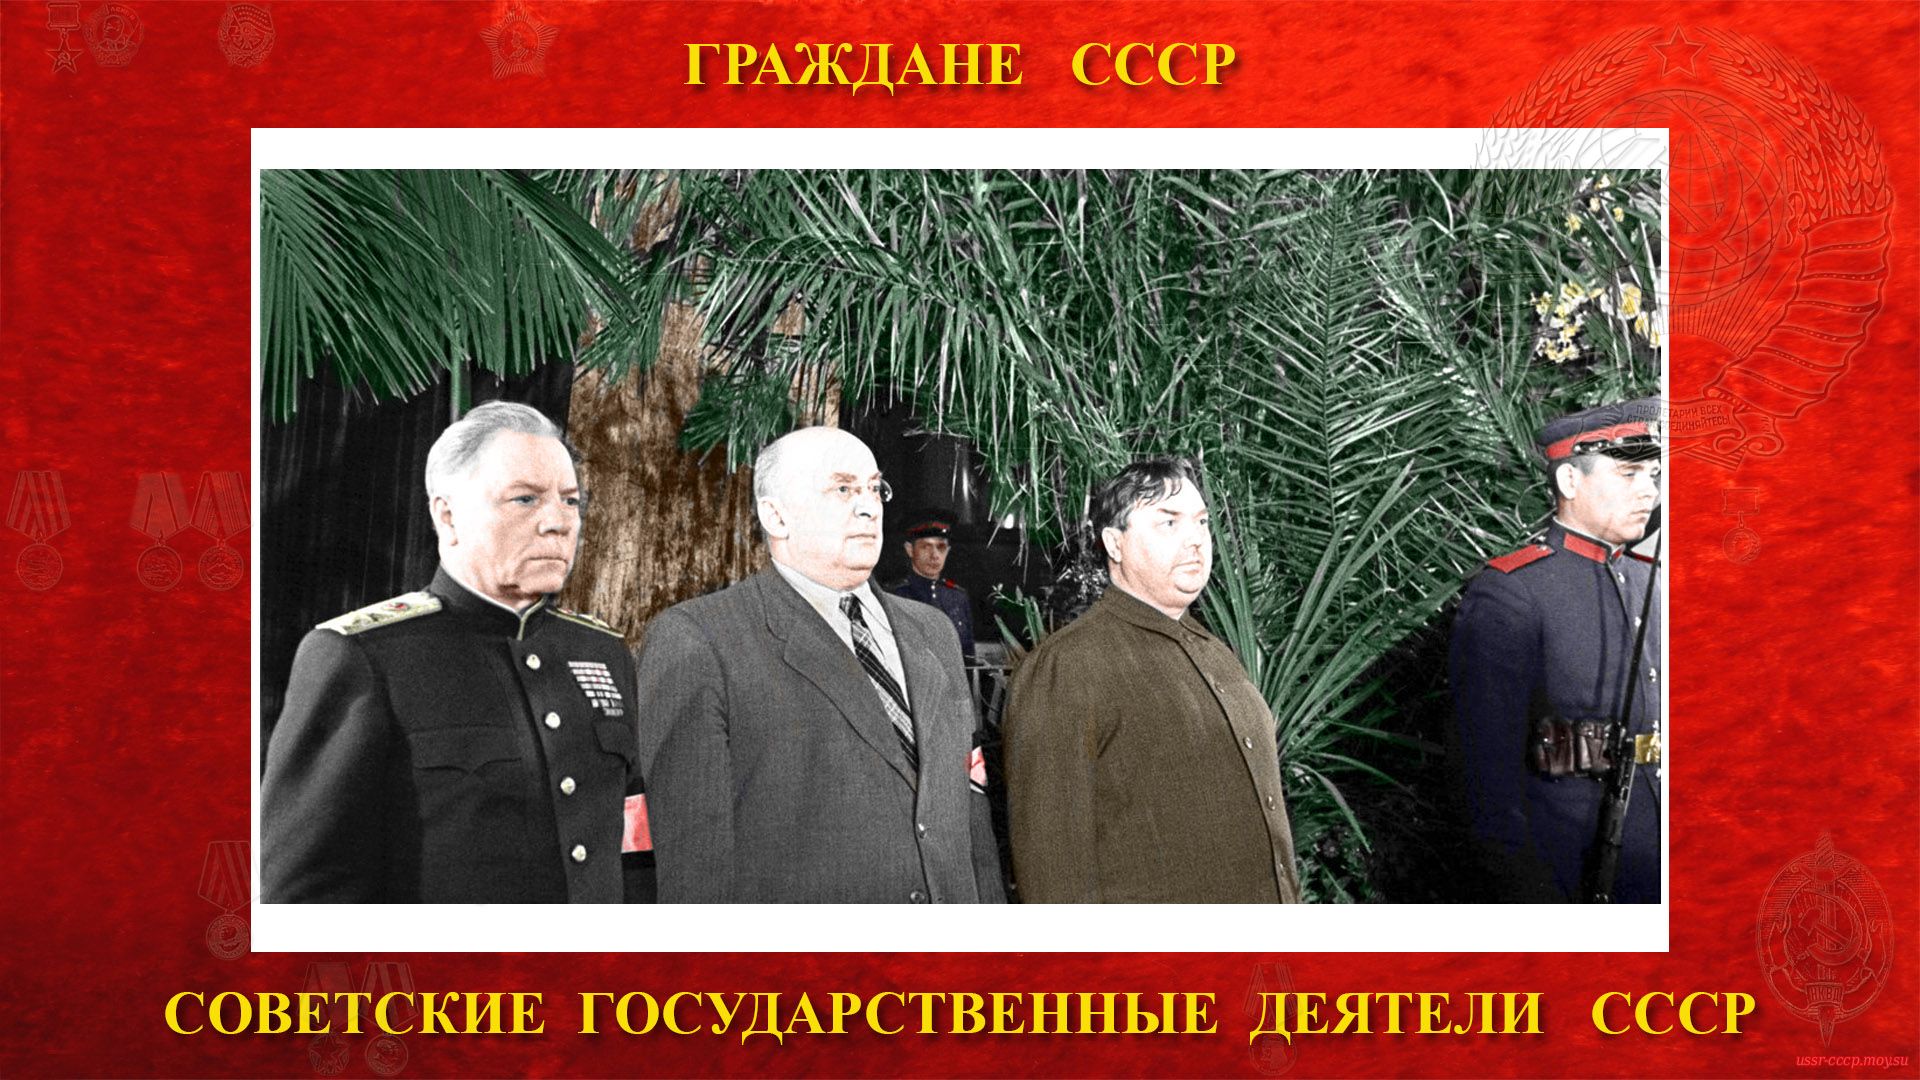 09 марта 1953 года — Л. П. Берия участвовал в похоронах И. В. Сталина, (на фото слева на право) Климент Ворошилов, Лаврентий Берия и председатель Совета министров СССР Георгий Маленков.